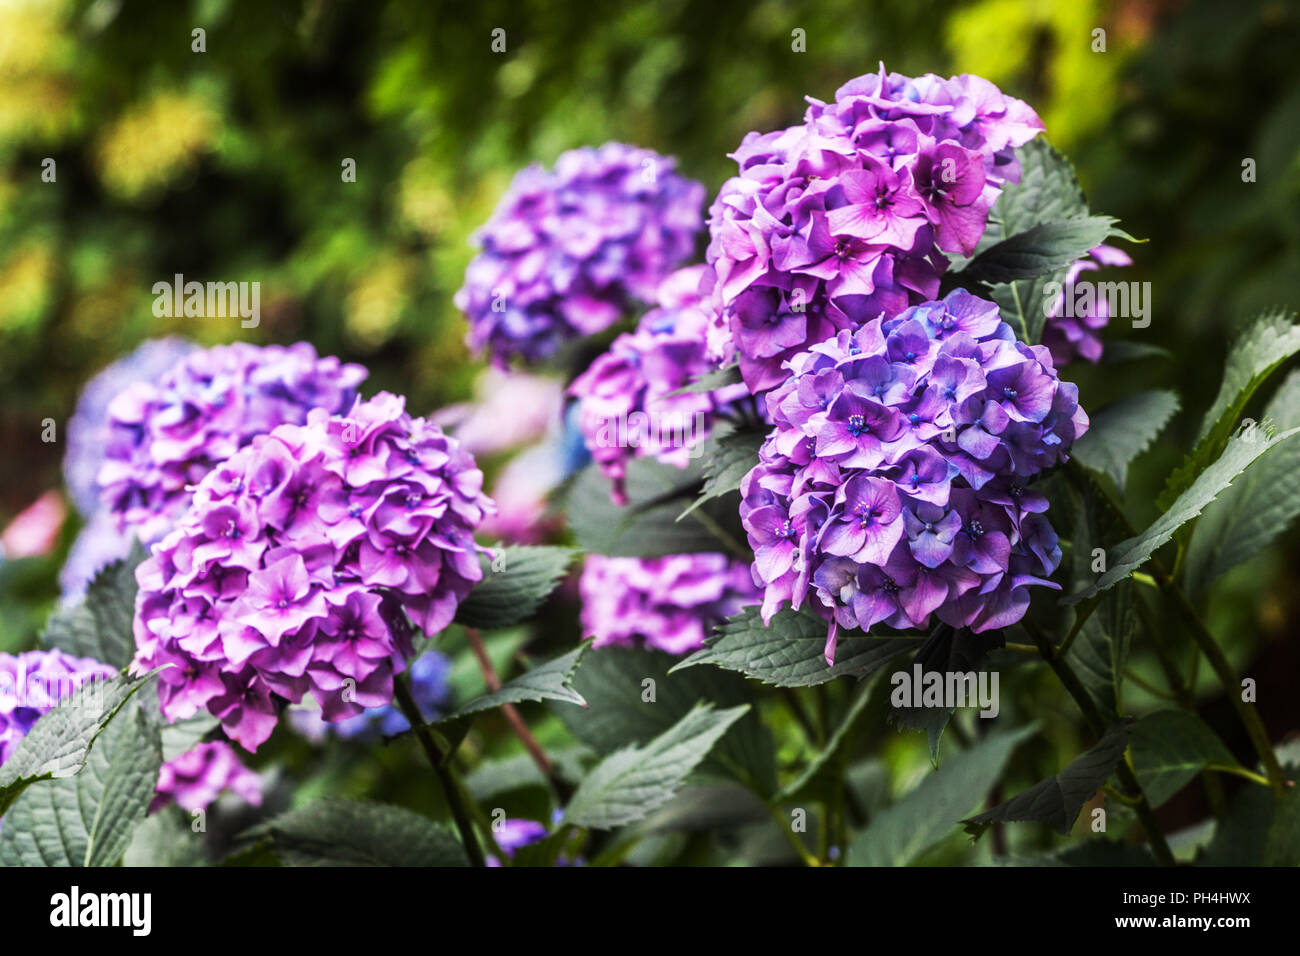 Hortensien blühen, blau und violett, Hydrangea macrophylla Stockfoto